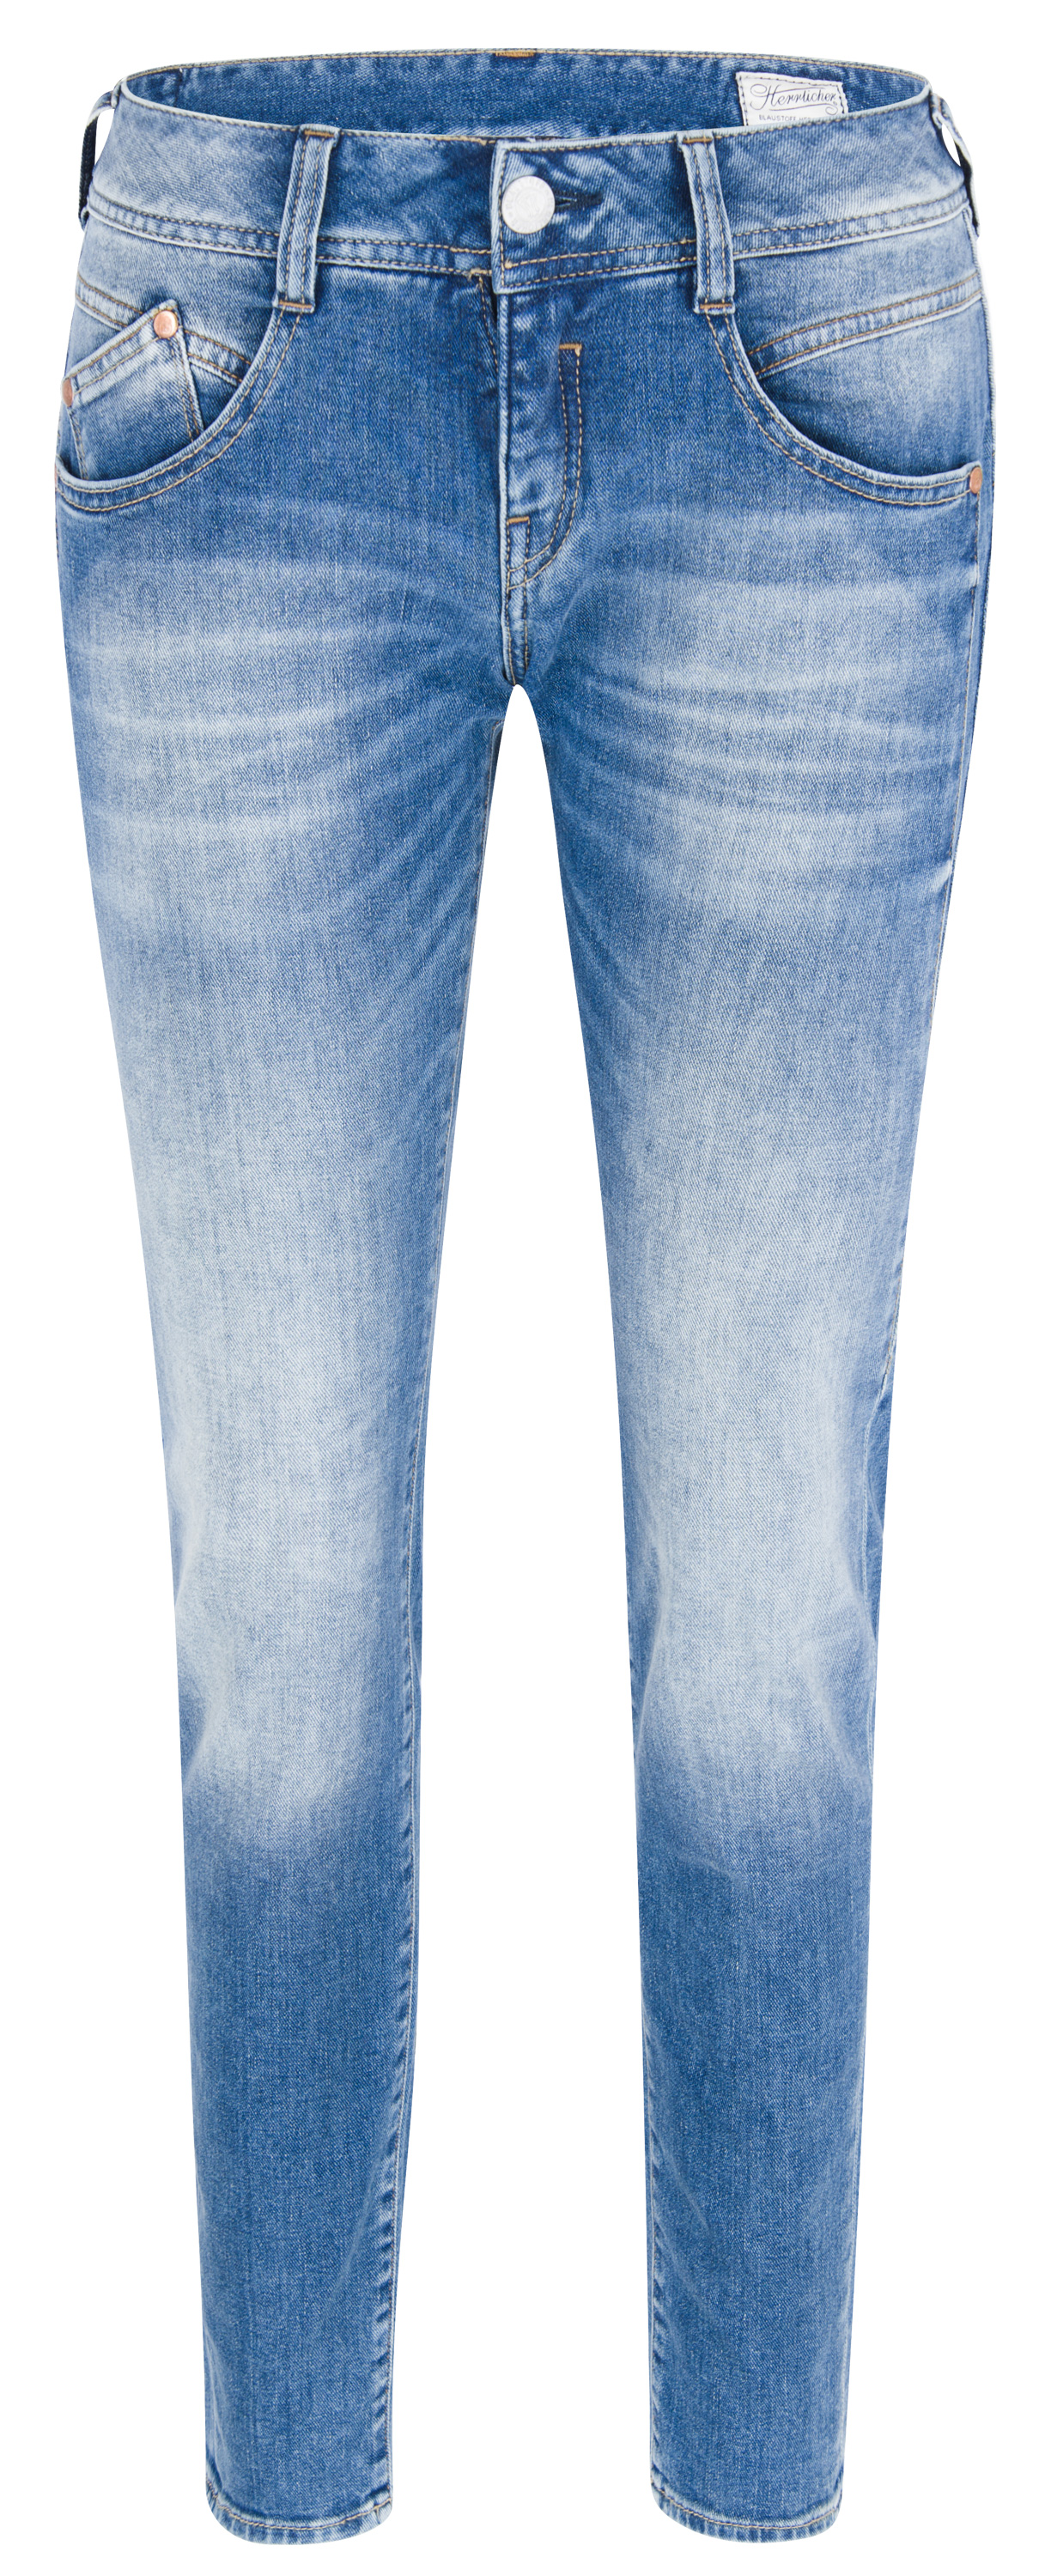 HERRLICHER GILA Slim Cashmere Touch Denim mariana blue l32 5606-D9020-833 |  CASHMERE TOUCH | Gila | Herrlicher Jeans | Damen Jeans | Jeans-Manufaktur